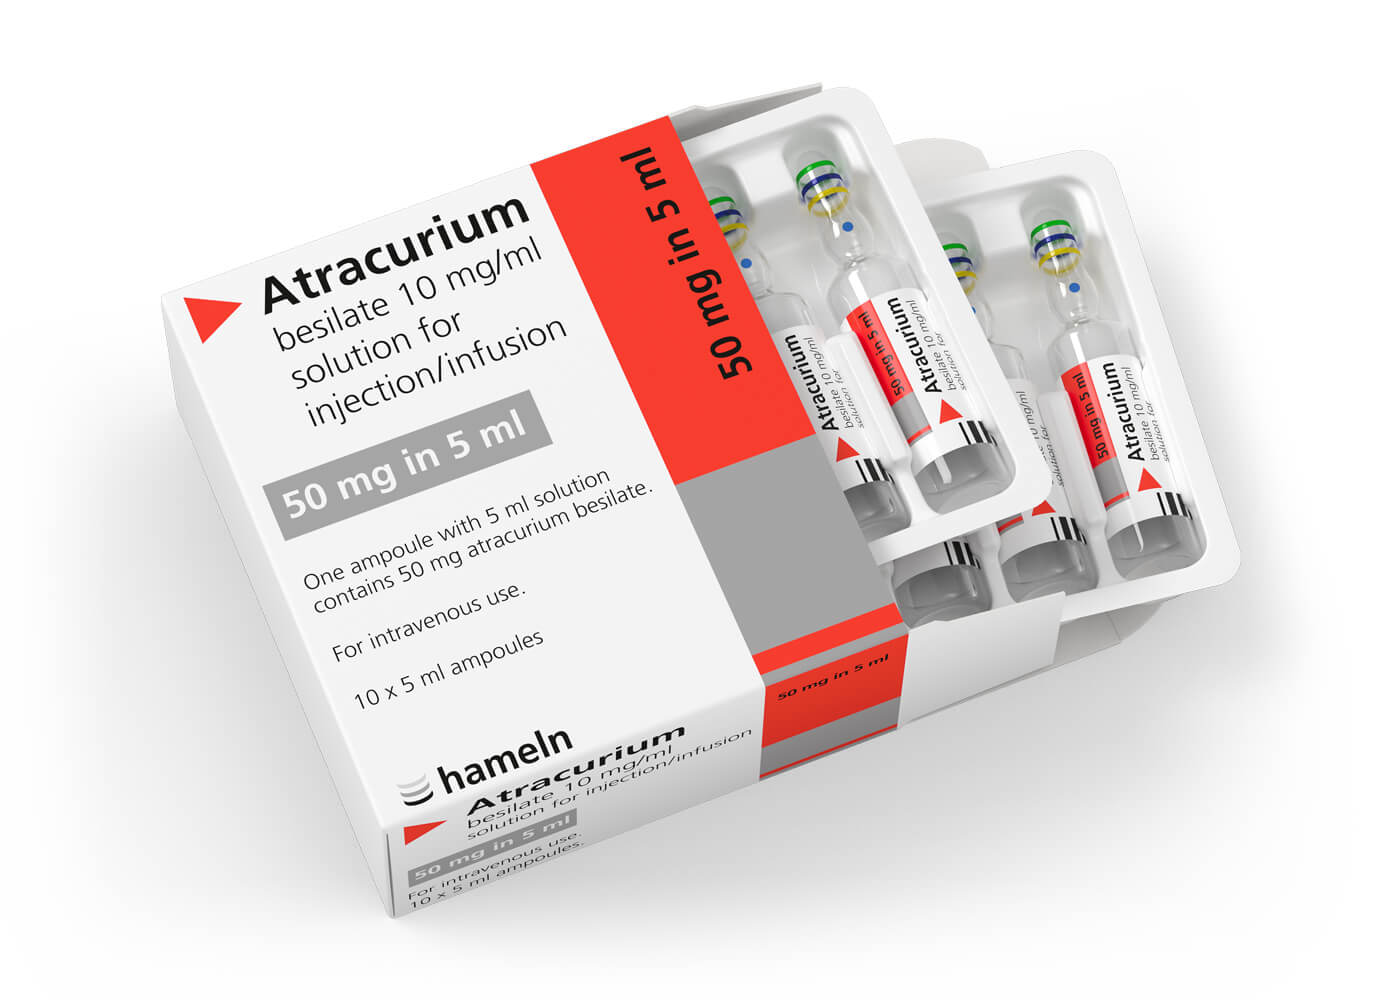 Atracurium_UK_10_mg-ml_in_5_ml_Pack-Amp_10St_2020-22